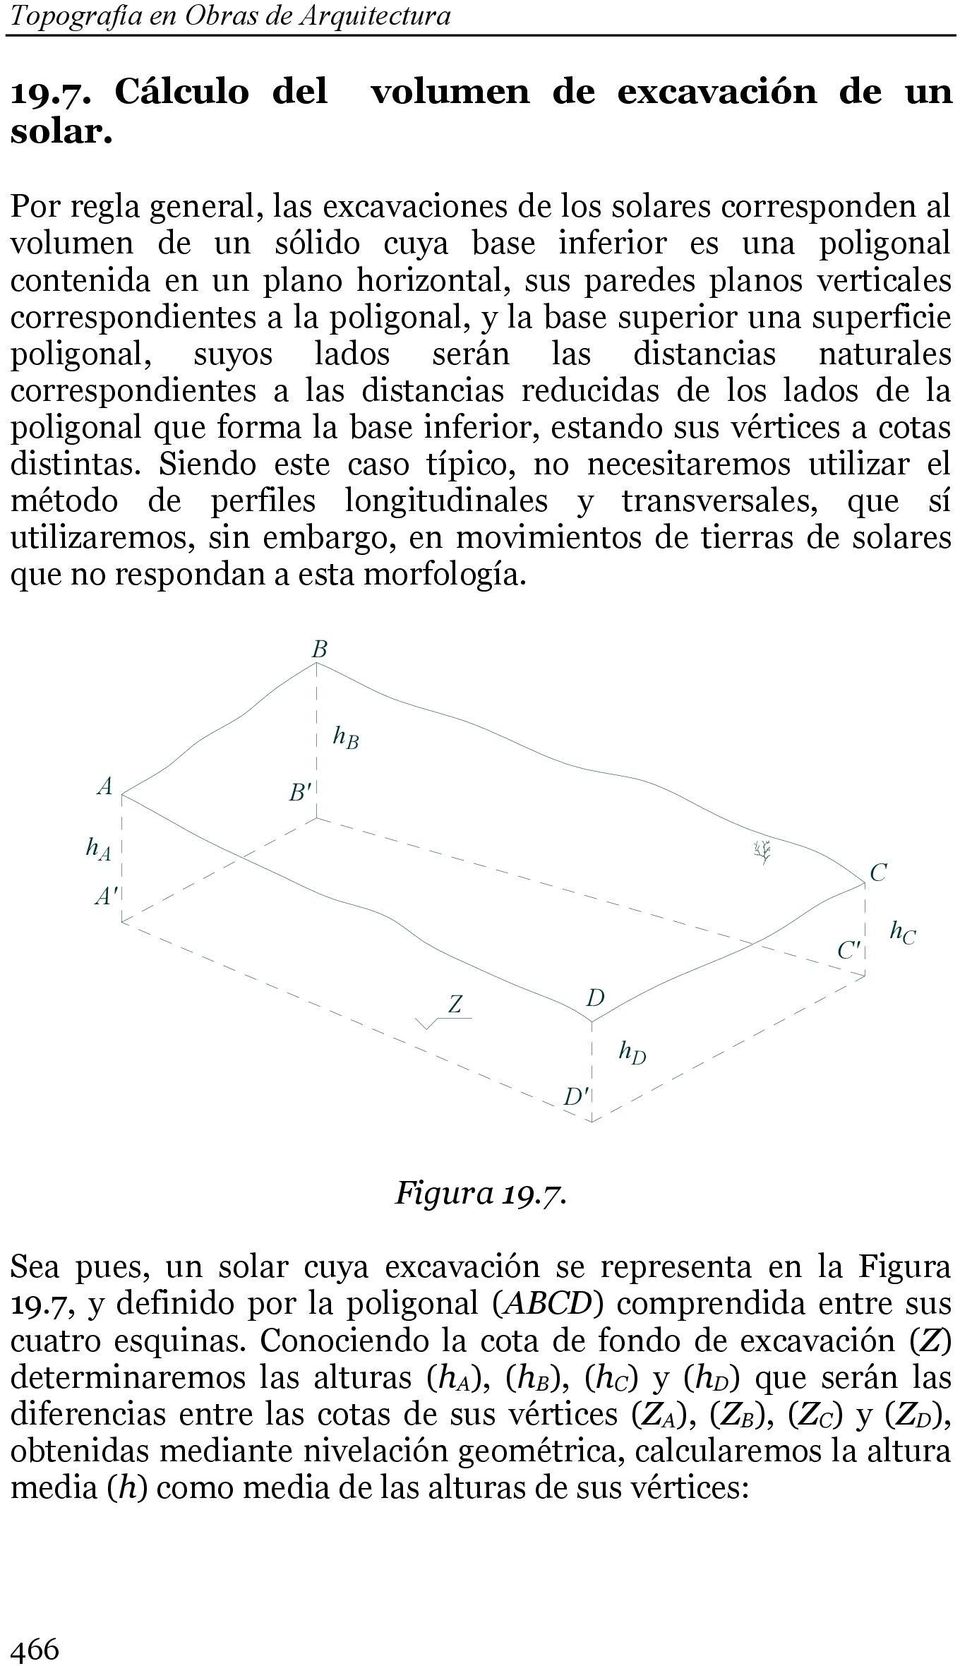 poligonal, y la base superior una superficie poligonal, suyos laos serán las isancias naurales corresponienes a las isancias reucias e los laos e la poligonal que forma la base inferior, esano sus